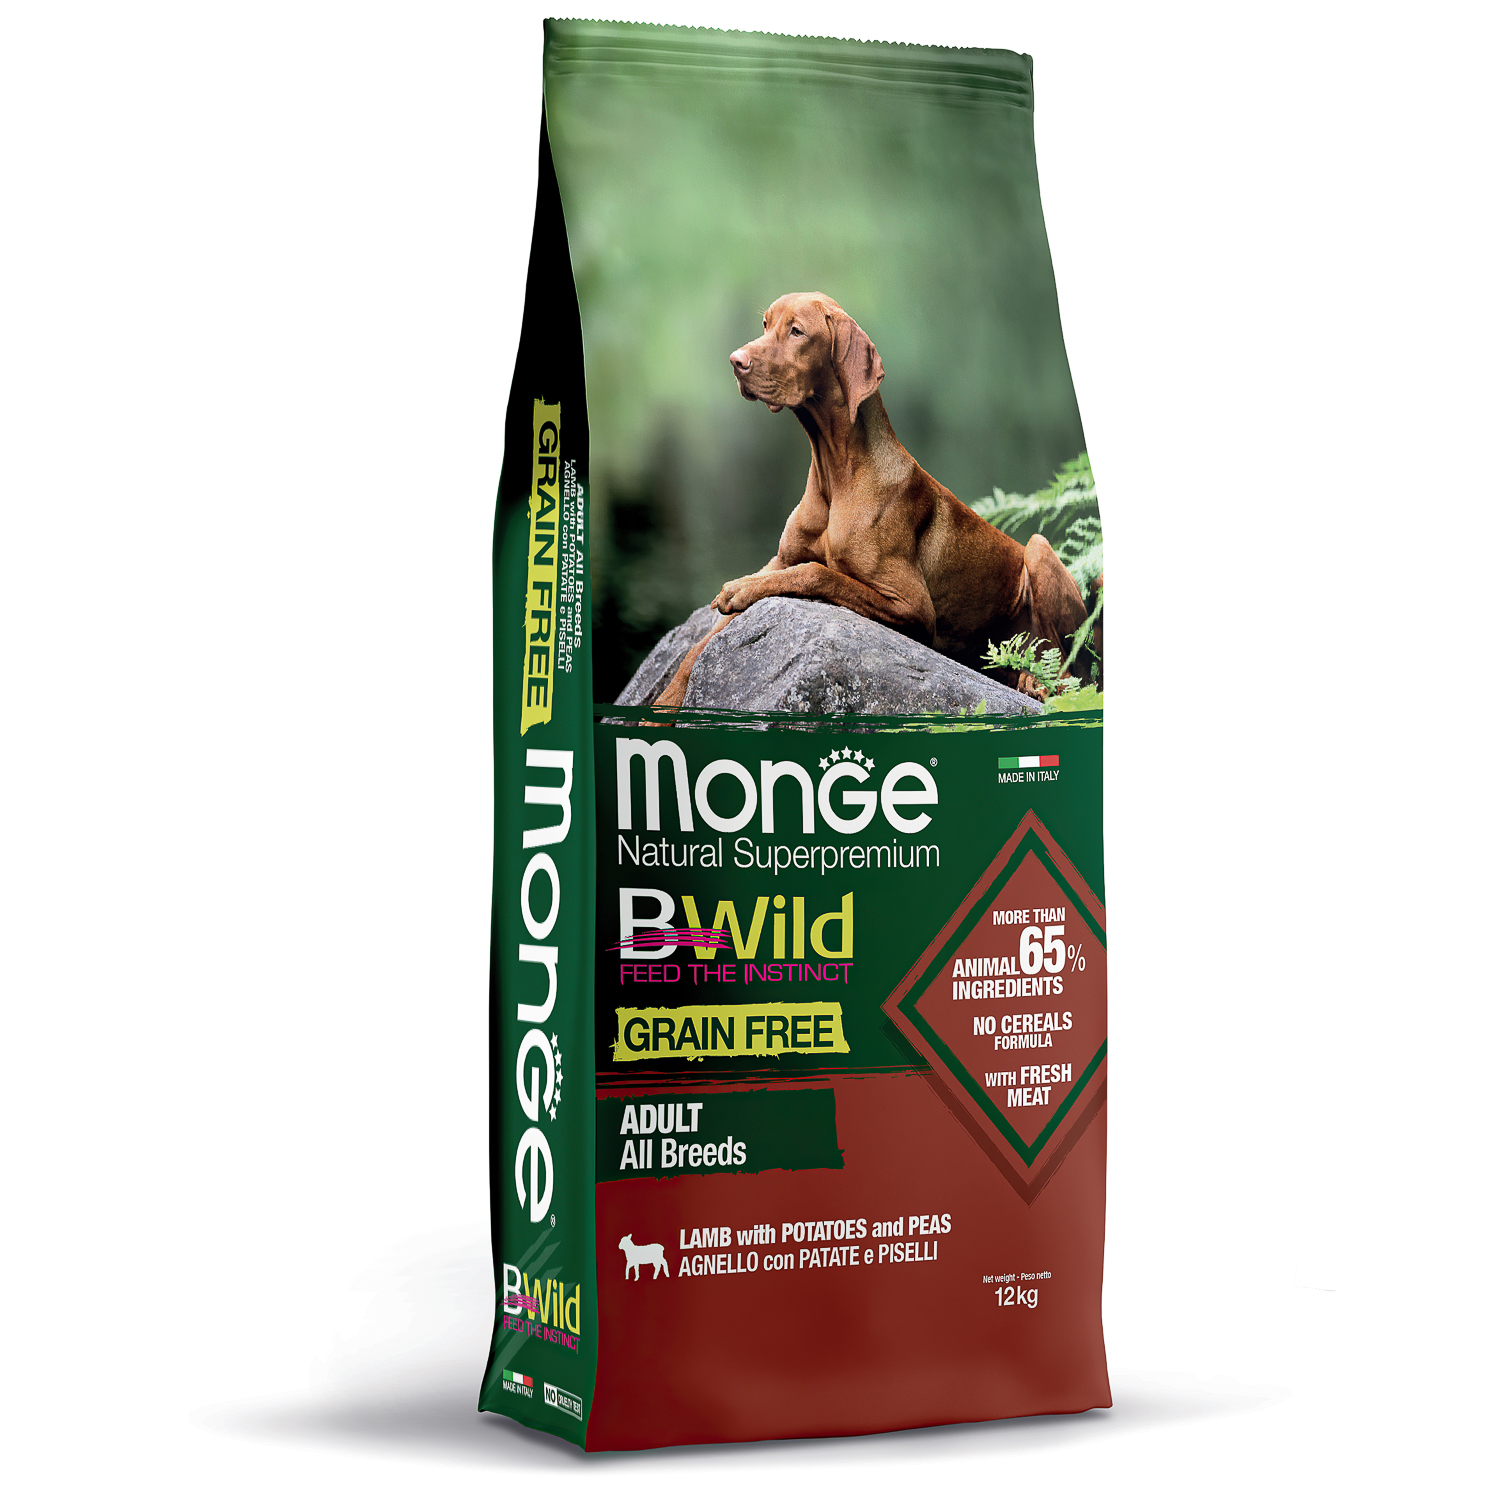 Сухой корм Monge Dog BWild GRAIN FREE для взрослых собак всех пород, беззерновой, из ягненка с картофелем и горохом 12 кг